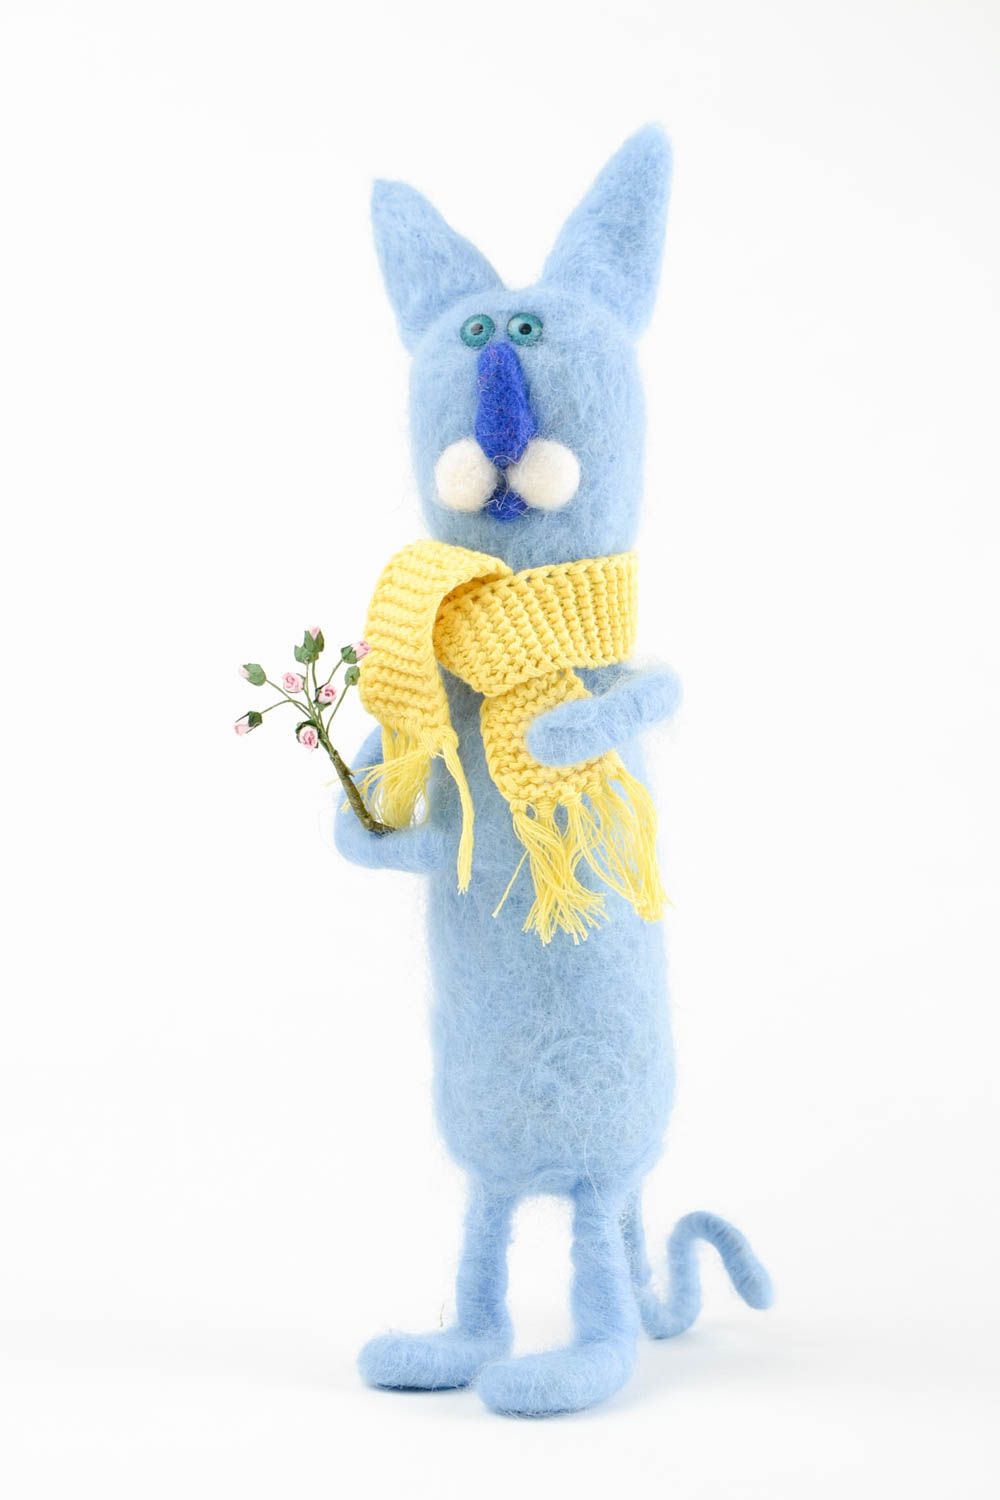 Валяная игрушка ручной работы игрушка из шерсти кот Боня мягкая игрушка валяная фото 3